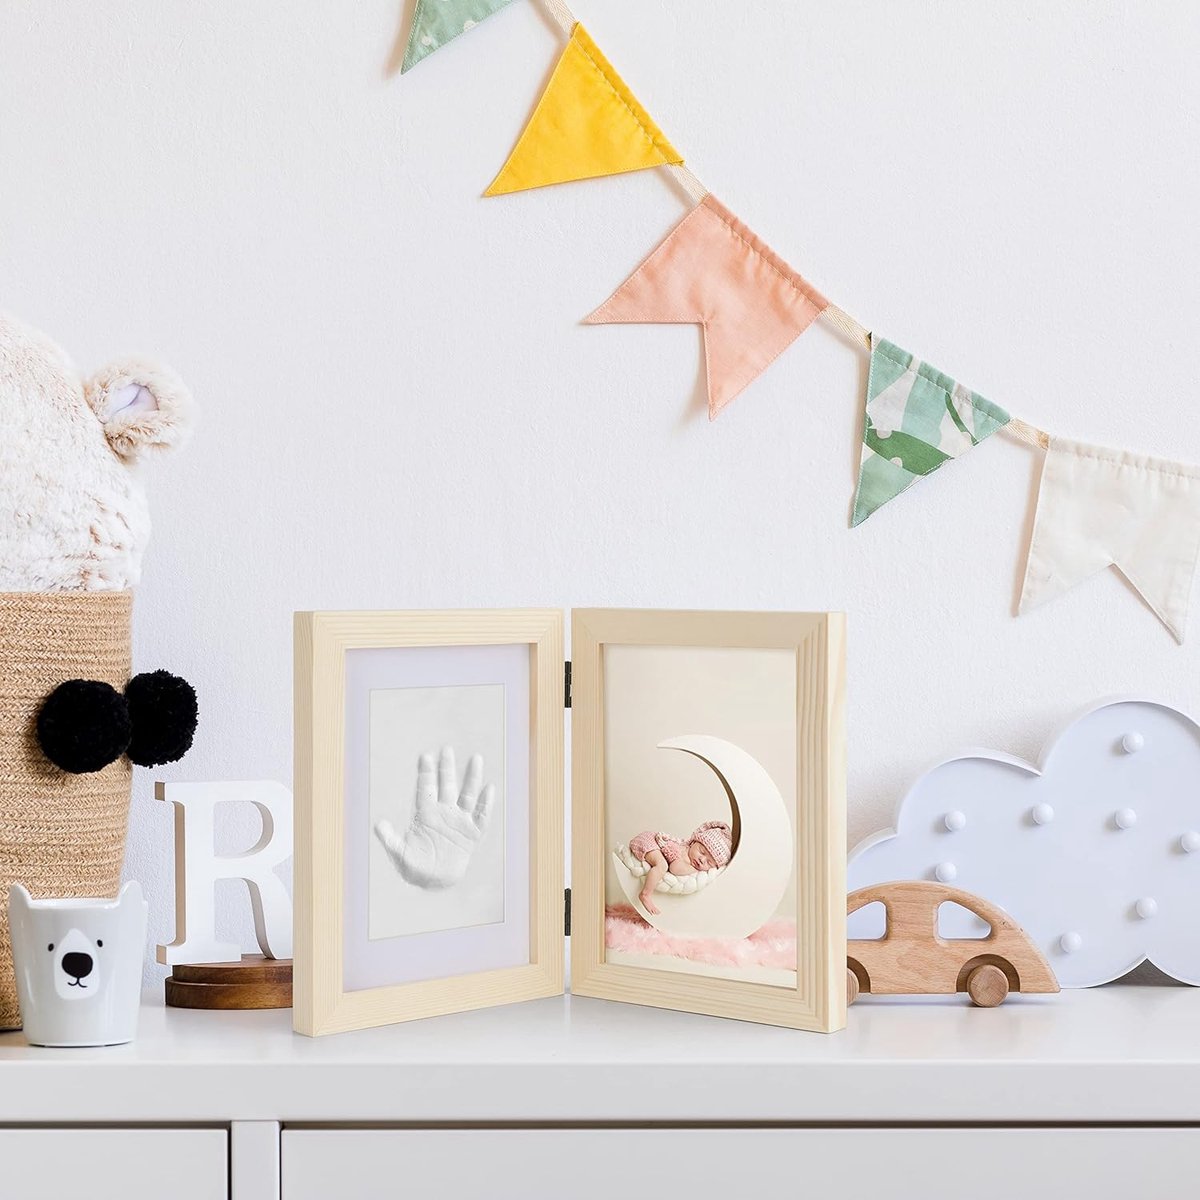 Baby Voetafdruk en Handafdruk Houten Fotolijst Kit (12,7 x 17,8 cm Foto) met Deegroller - Kamerdecoratie, Cadeau, Souvenir, Aandenken - Gemakkelijk te Gebruiken